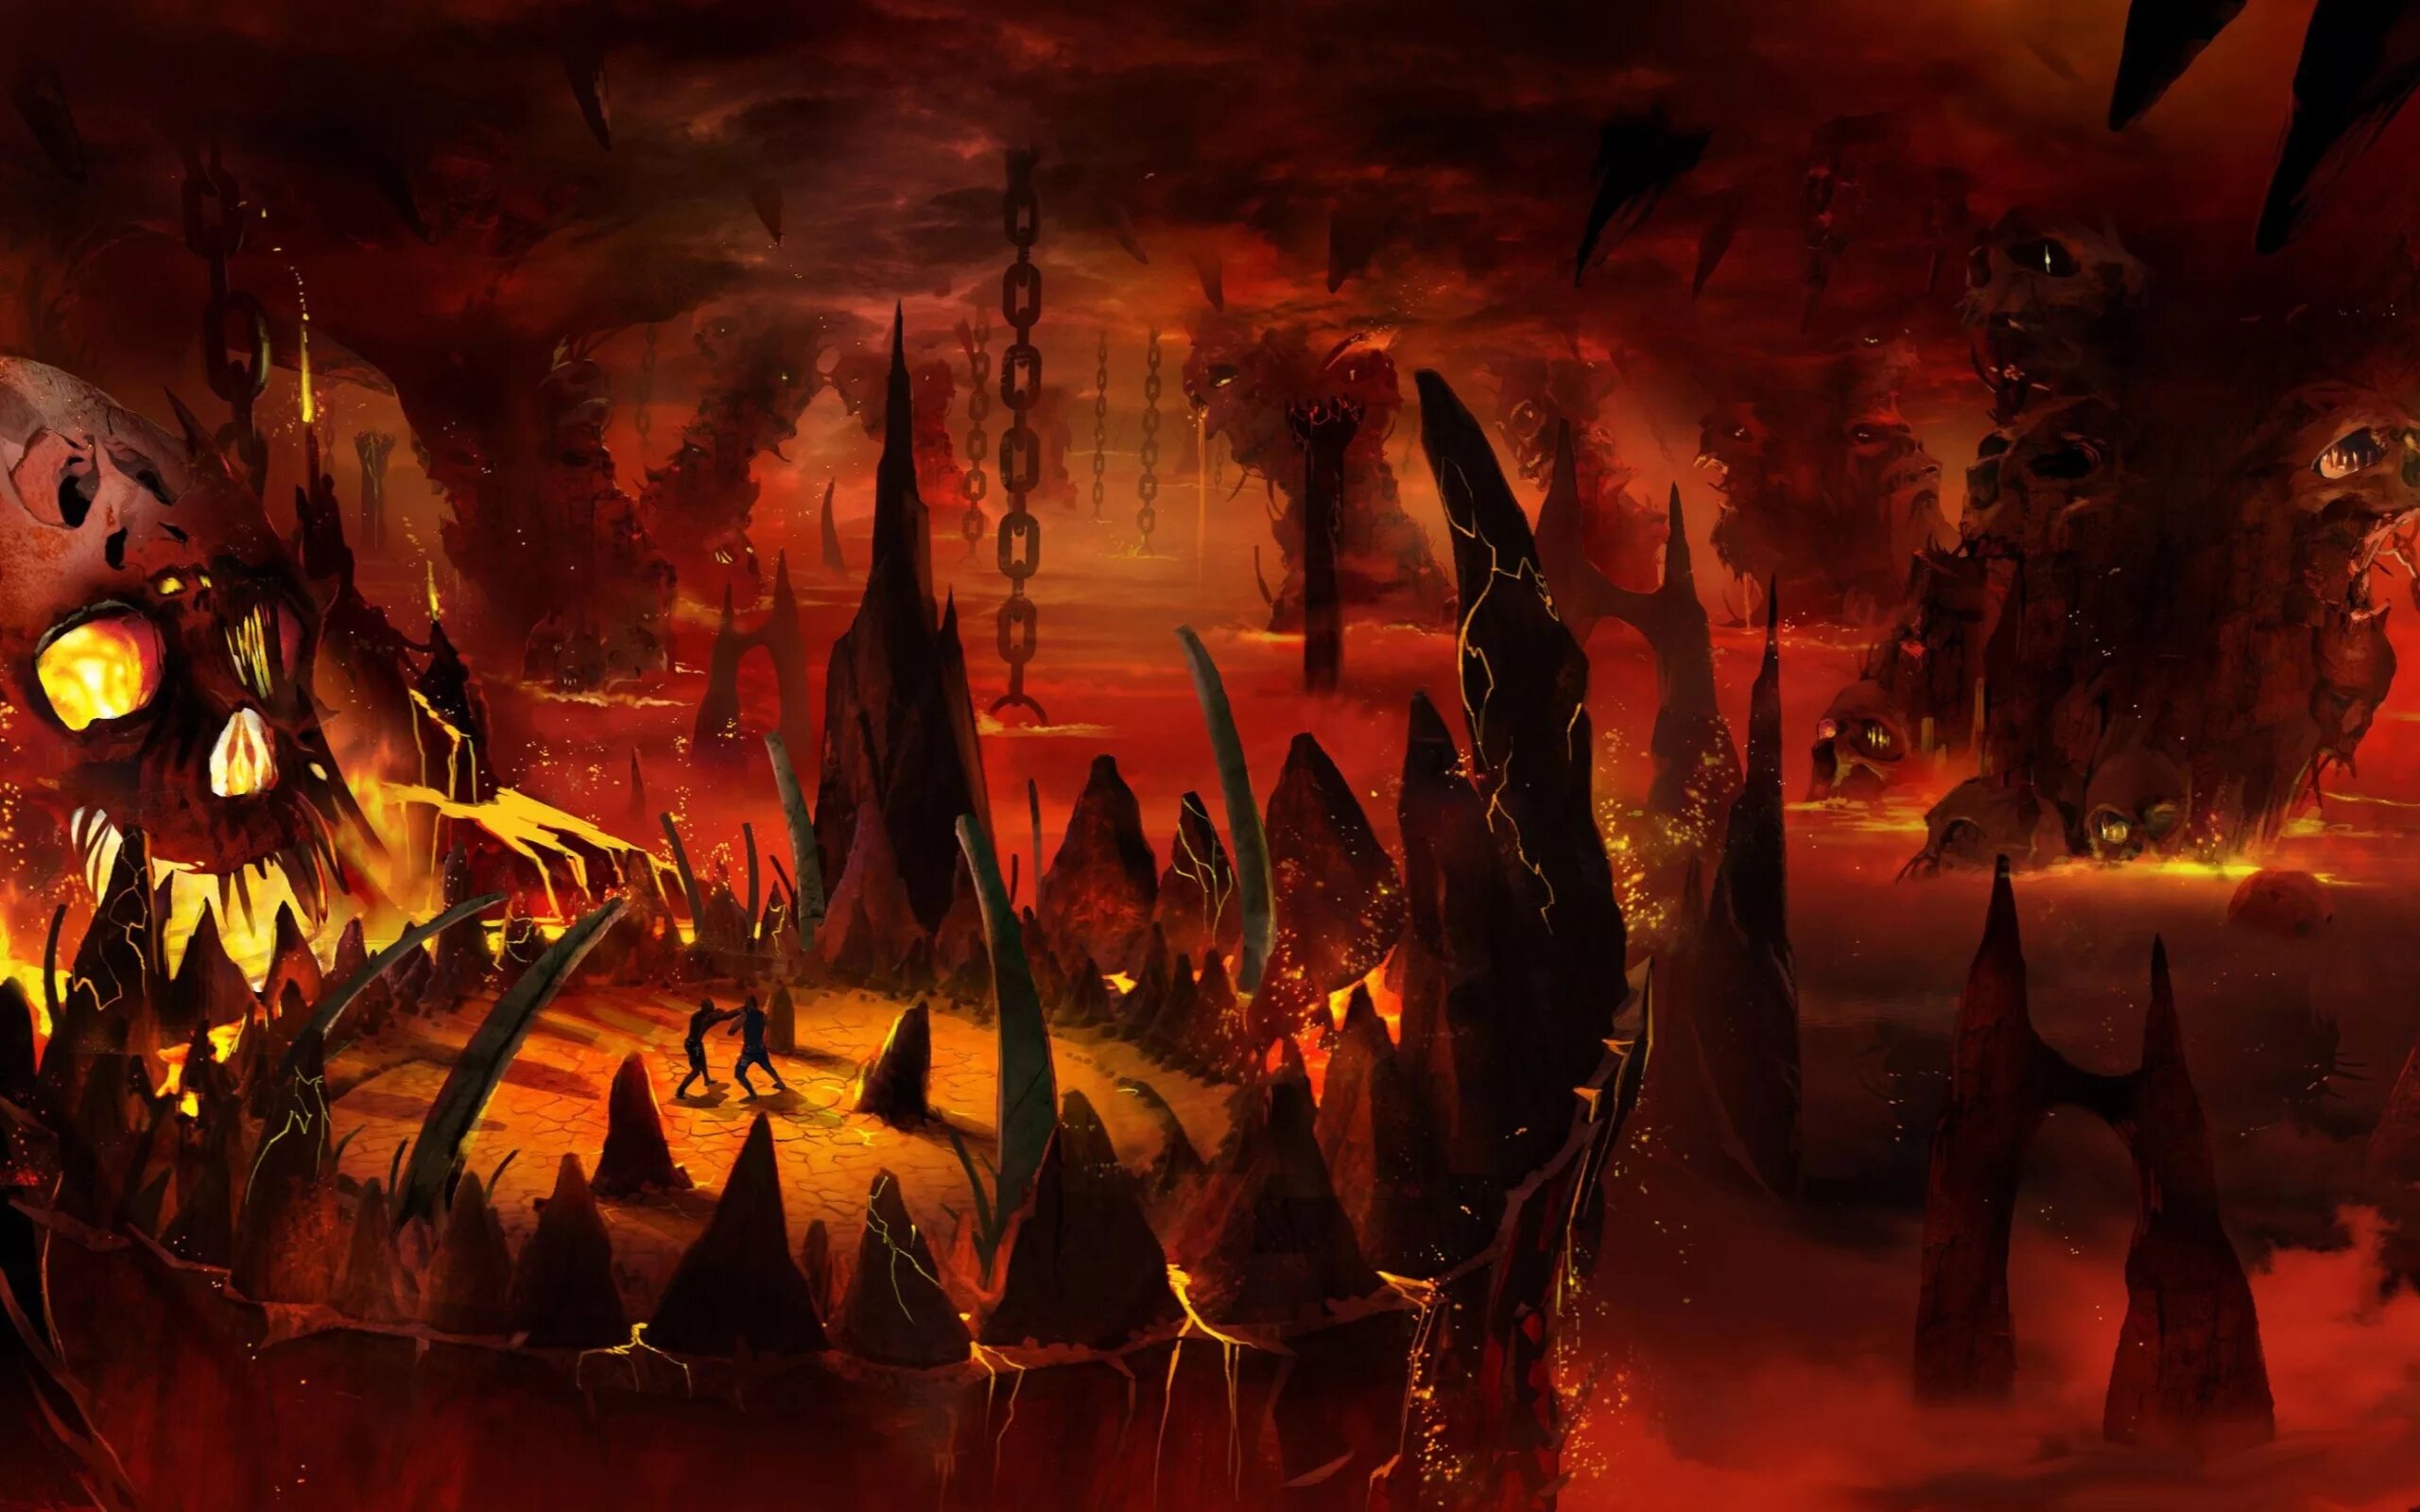 Ад. Царство хаоса мортал комбат. Mortal Kombat царство хаоса. Картинки ада.